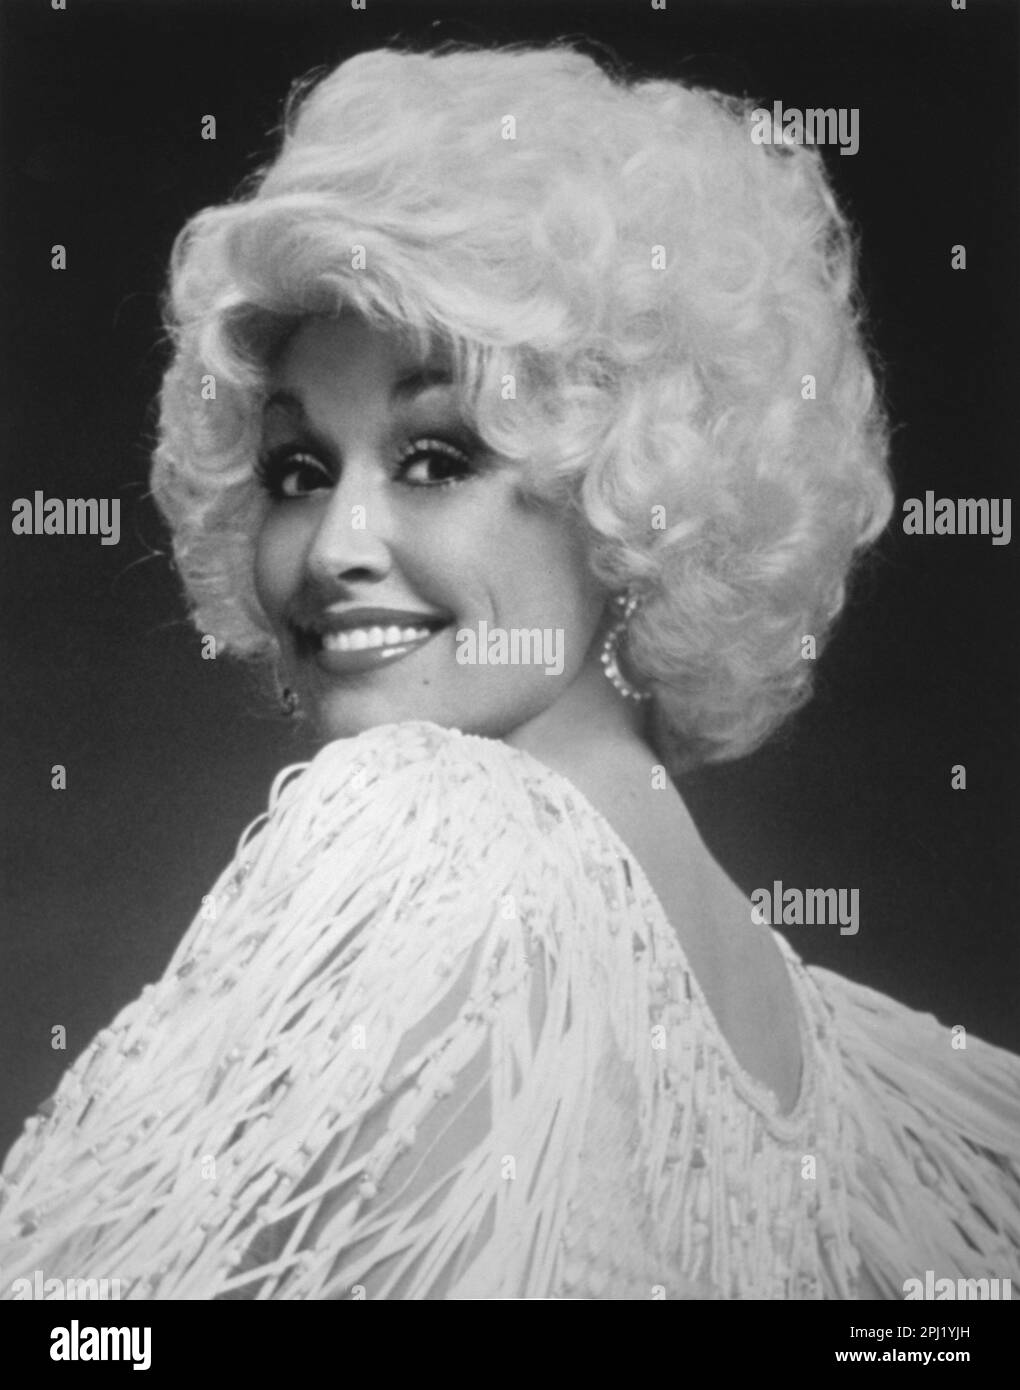 PR-Aufnahme von Dolly Parton, amerikanischer Sängerin/Songwriter Stockfoto